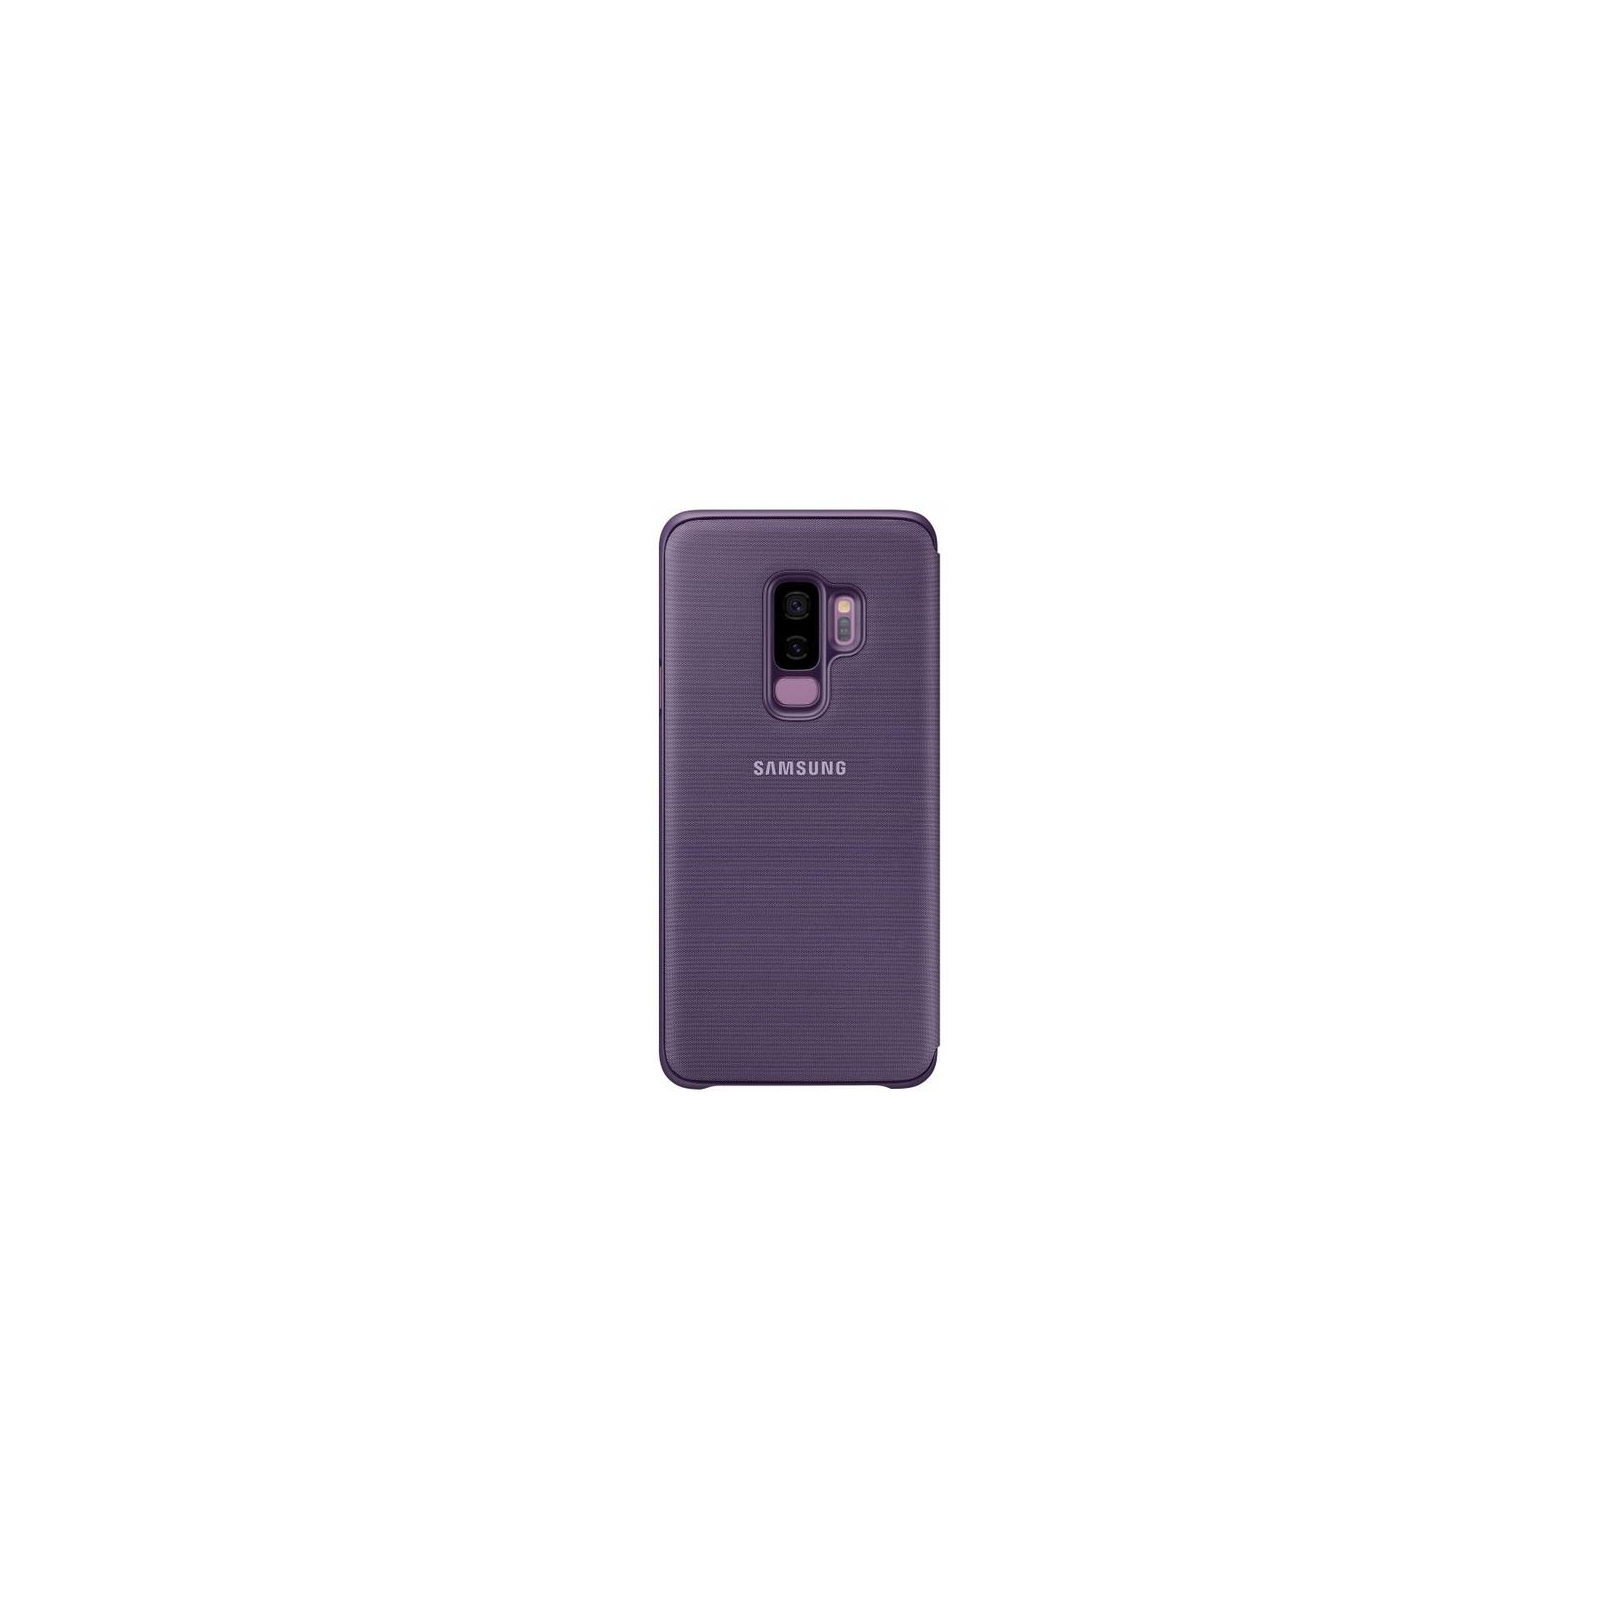 Чехол для мобильного телефона Samsung для Galaxy S9+ (G965) LED View Cover Orchid Gray (EF-NG965PVEGRU) изображение 4